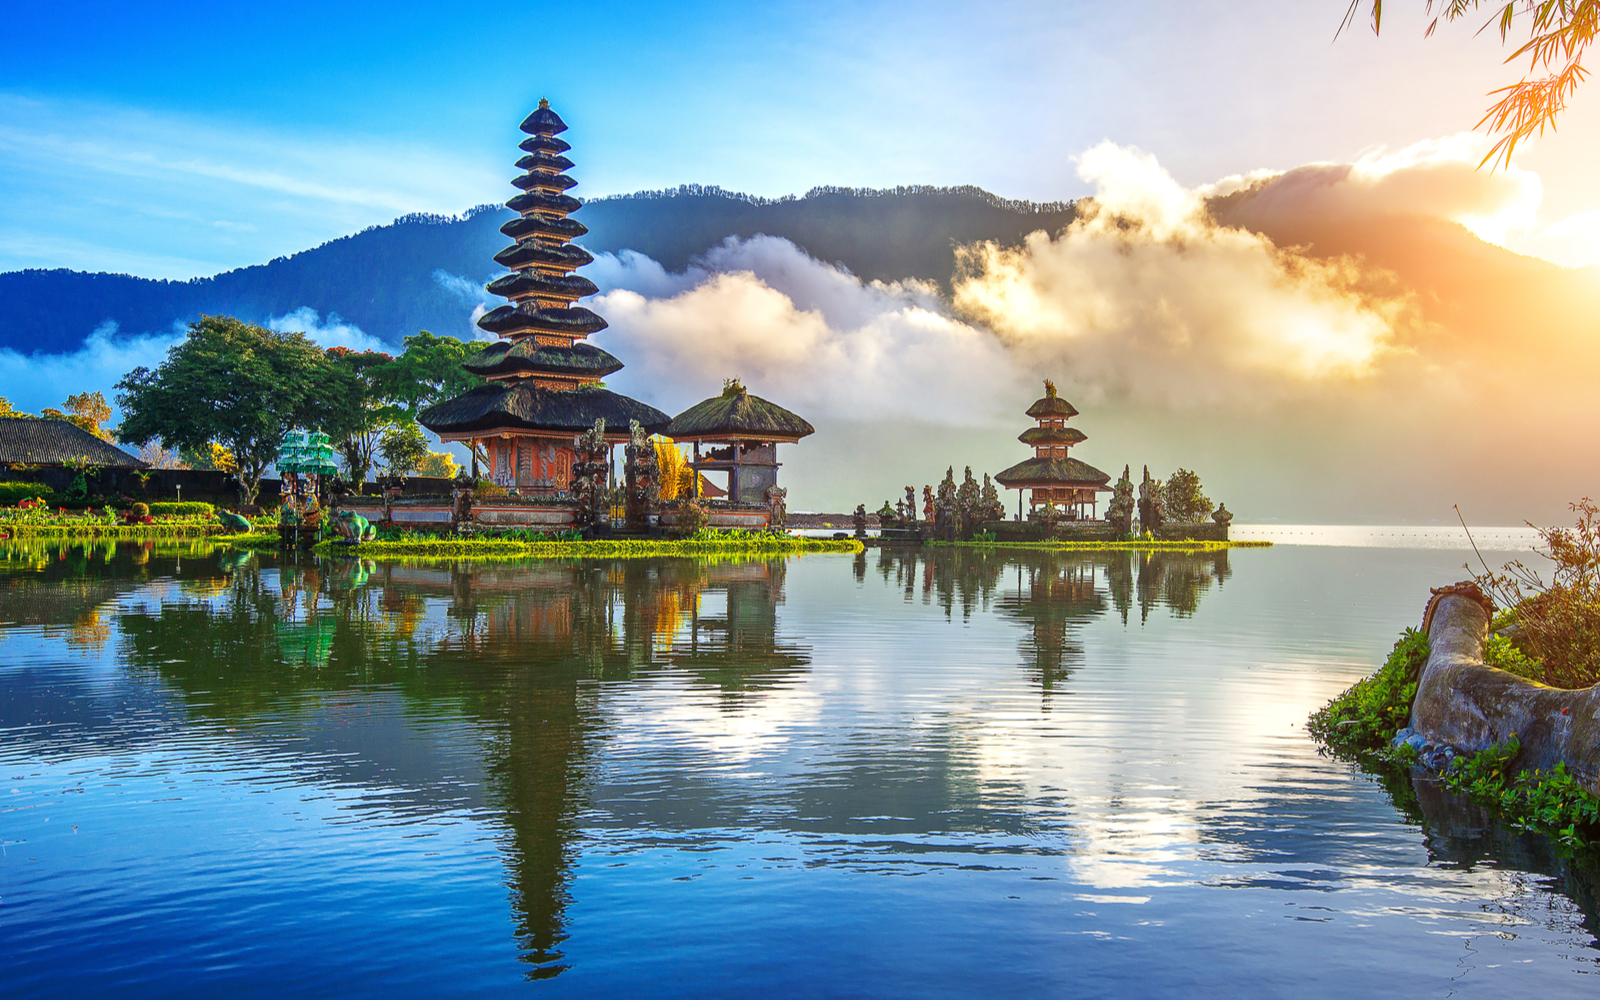 Is Bali Safe? | Travel Tips & Safety Concerns